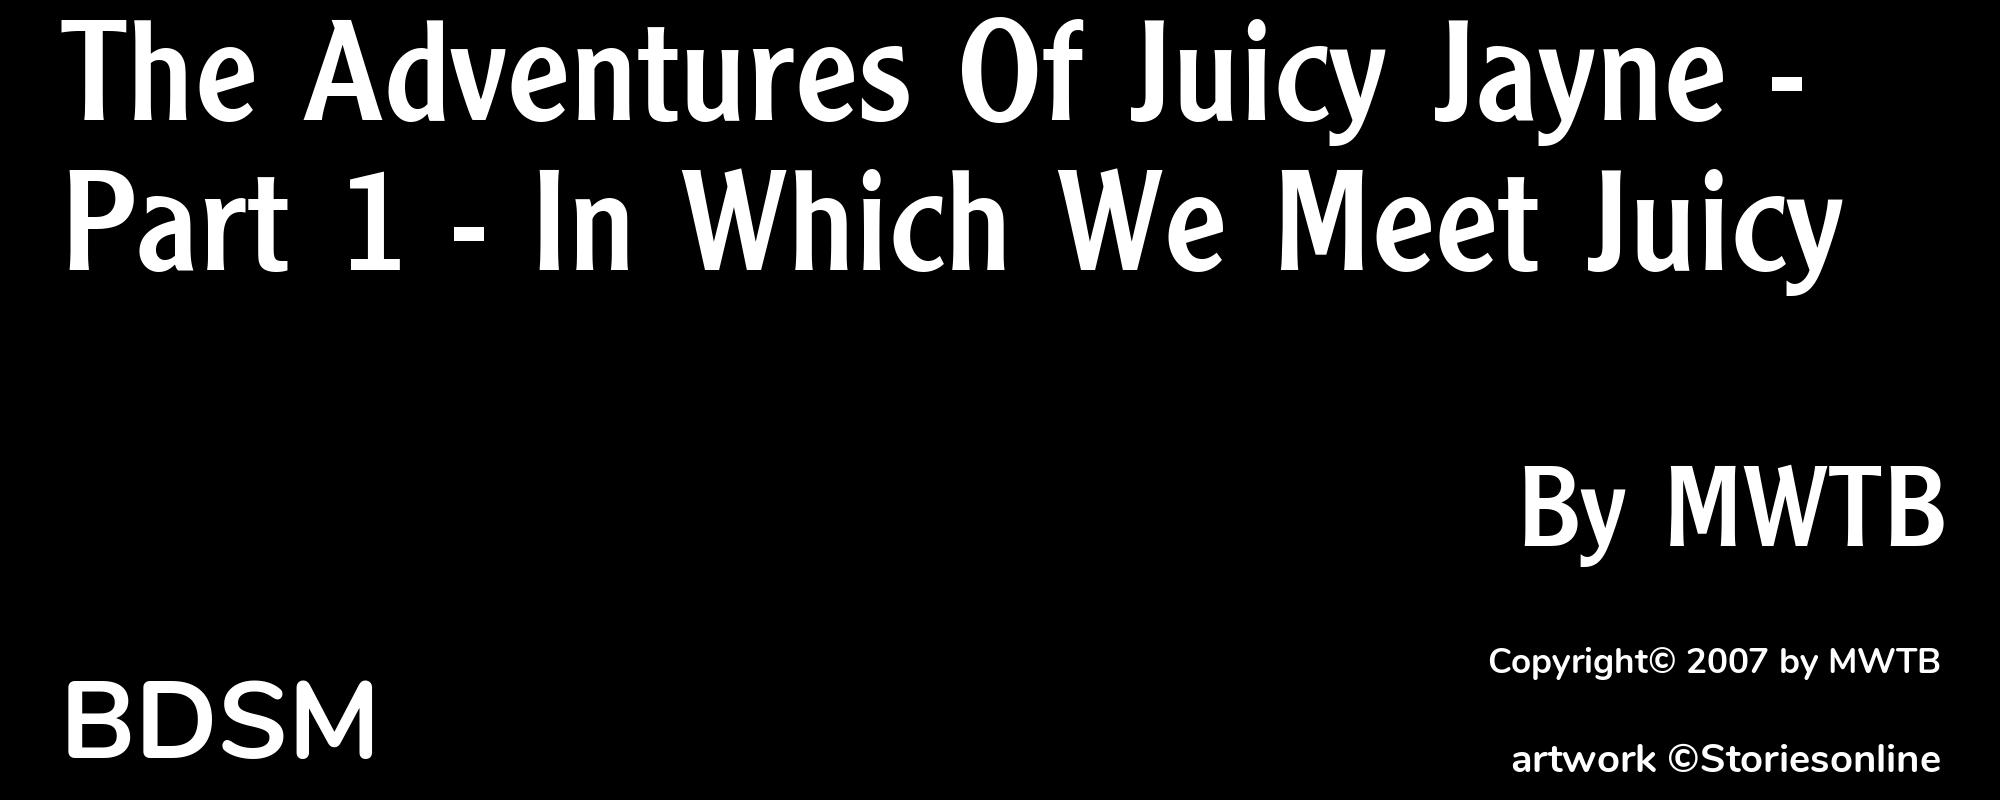 The Adventures Of Juicy Jayne - Part 1 - In Which We Meet Juicy - Cover